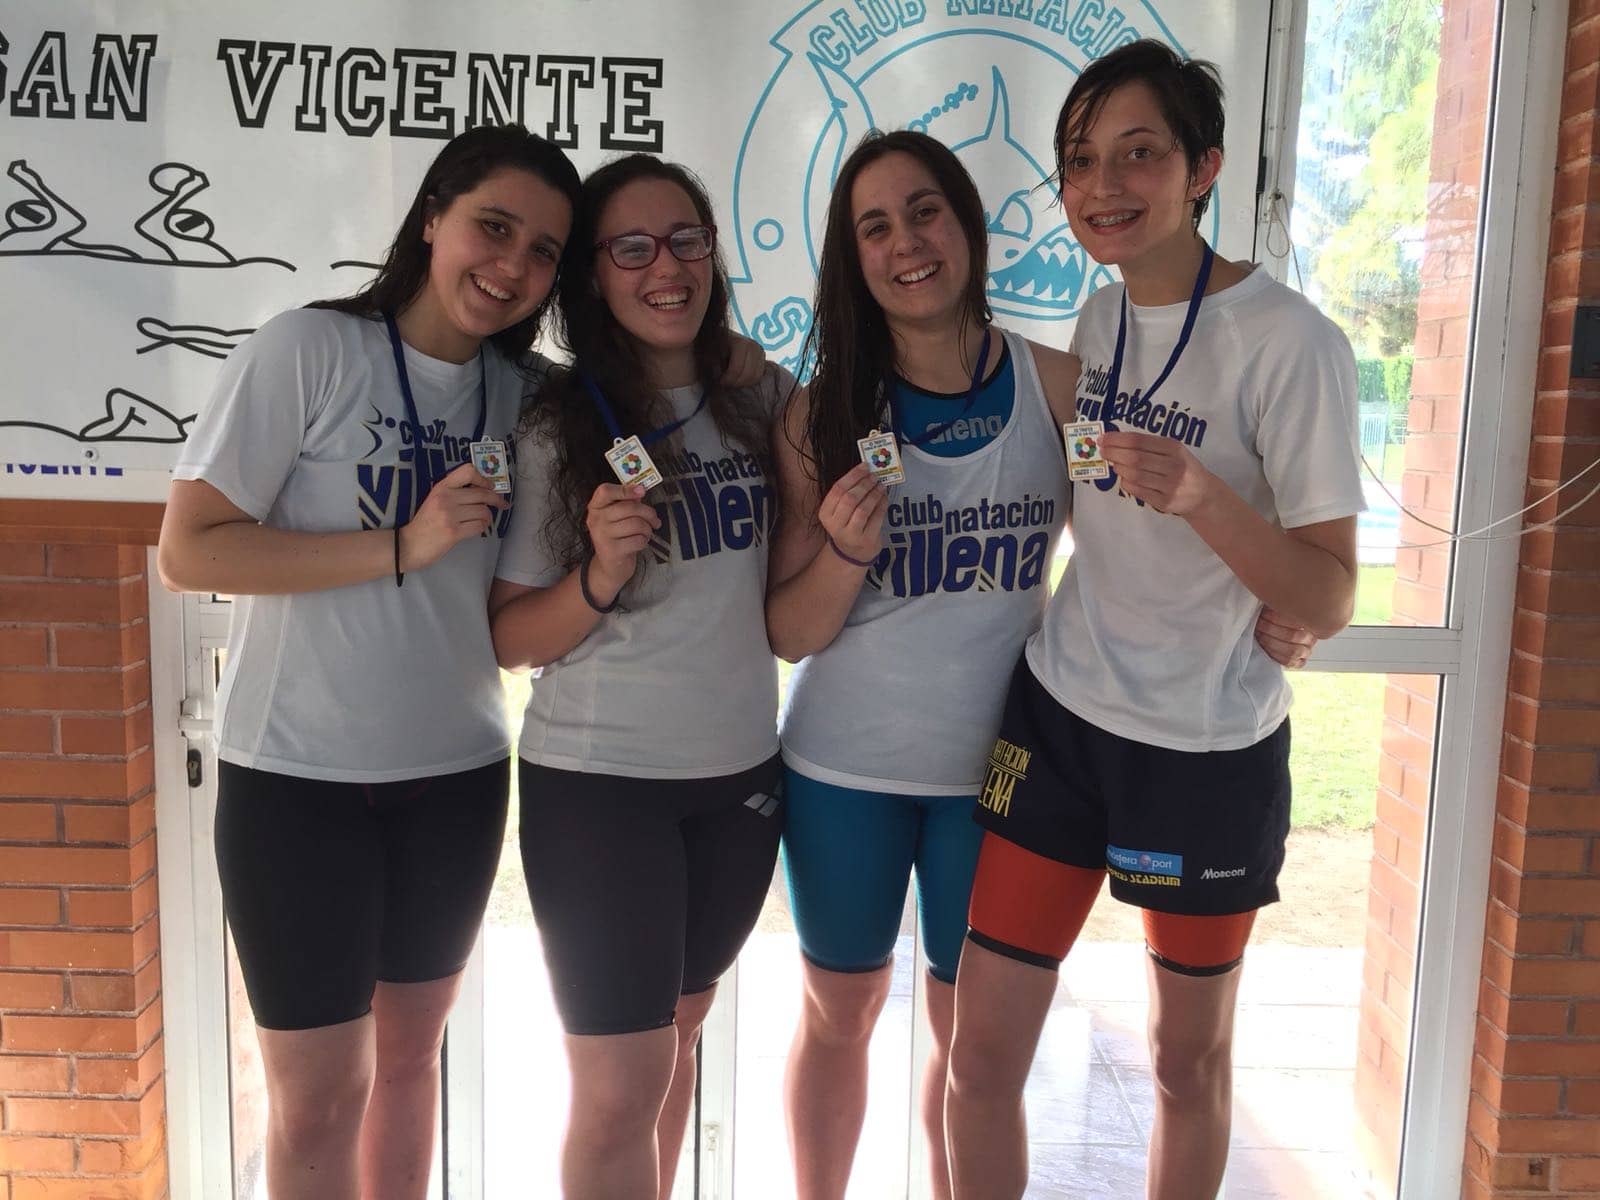 Podiums para Villena en el trofeo de natación Ciudad de San Vicente